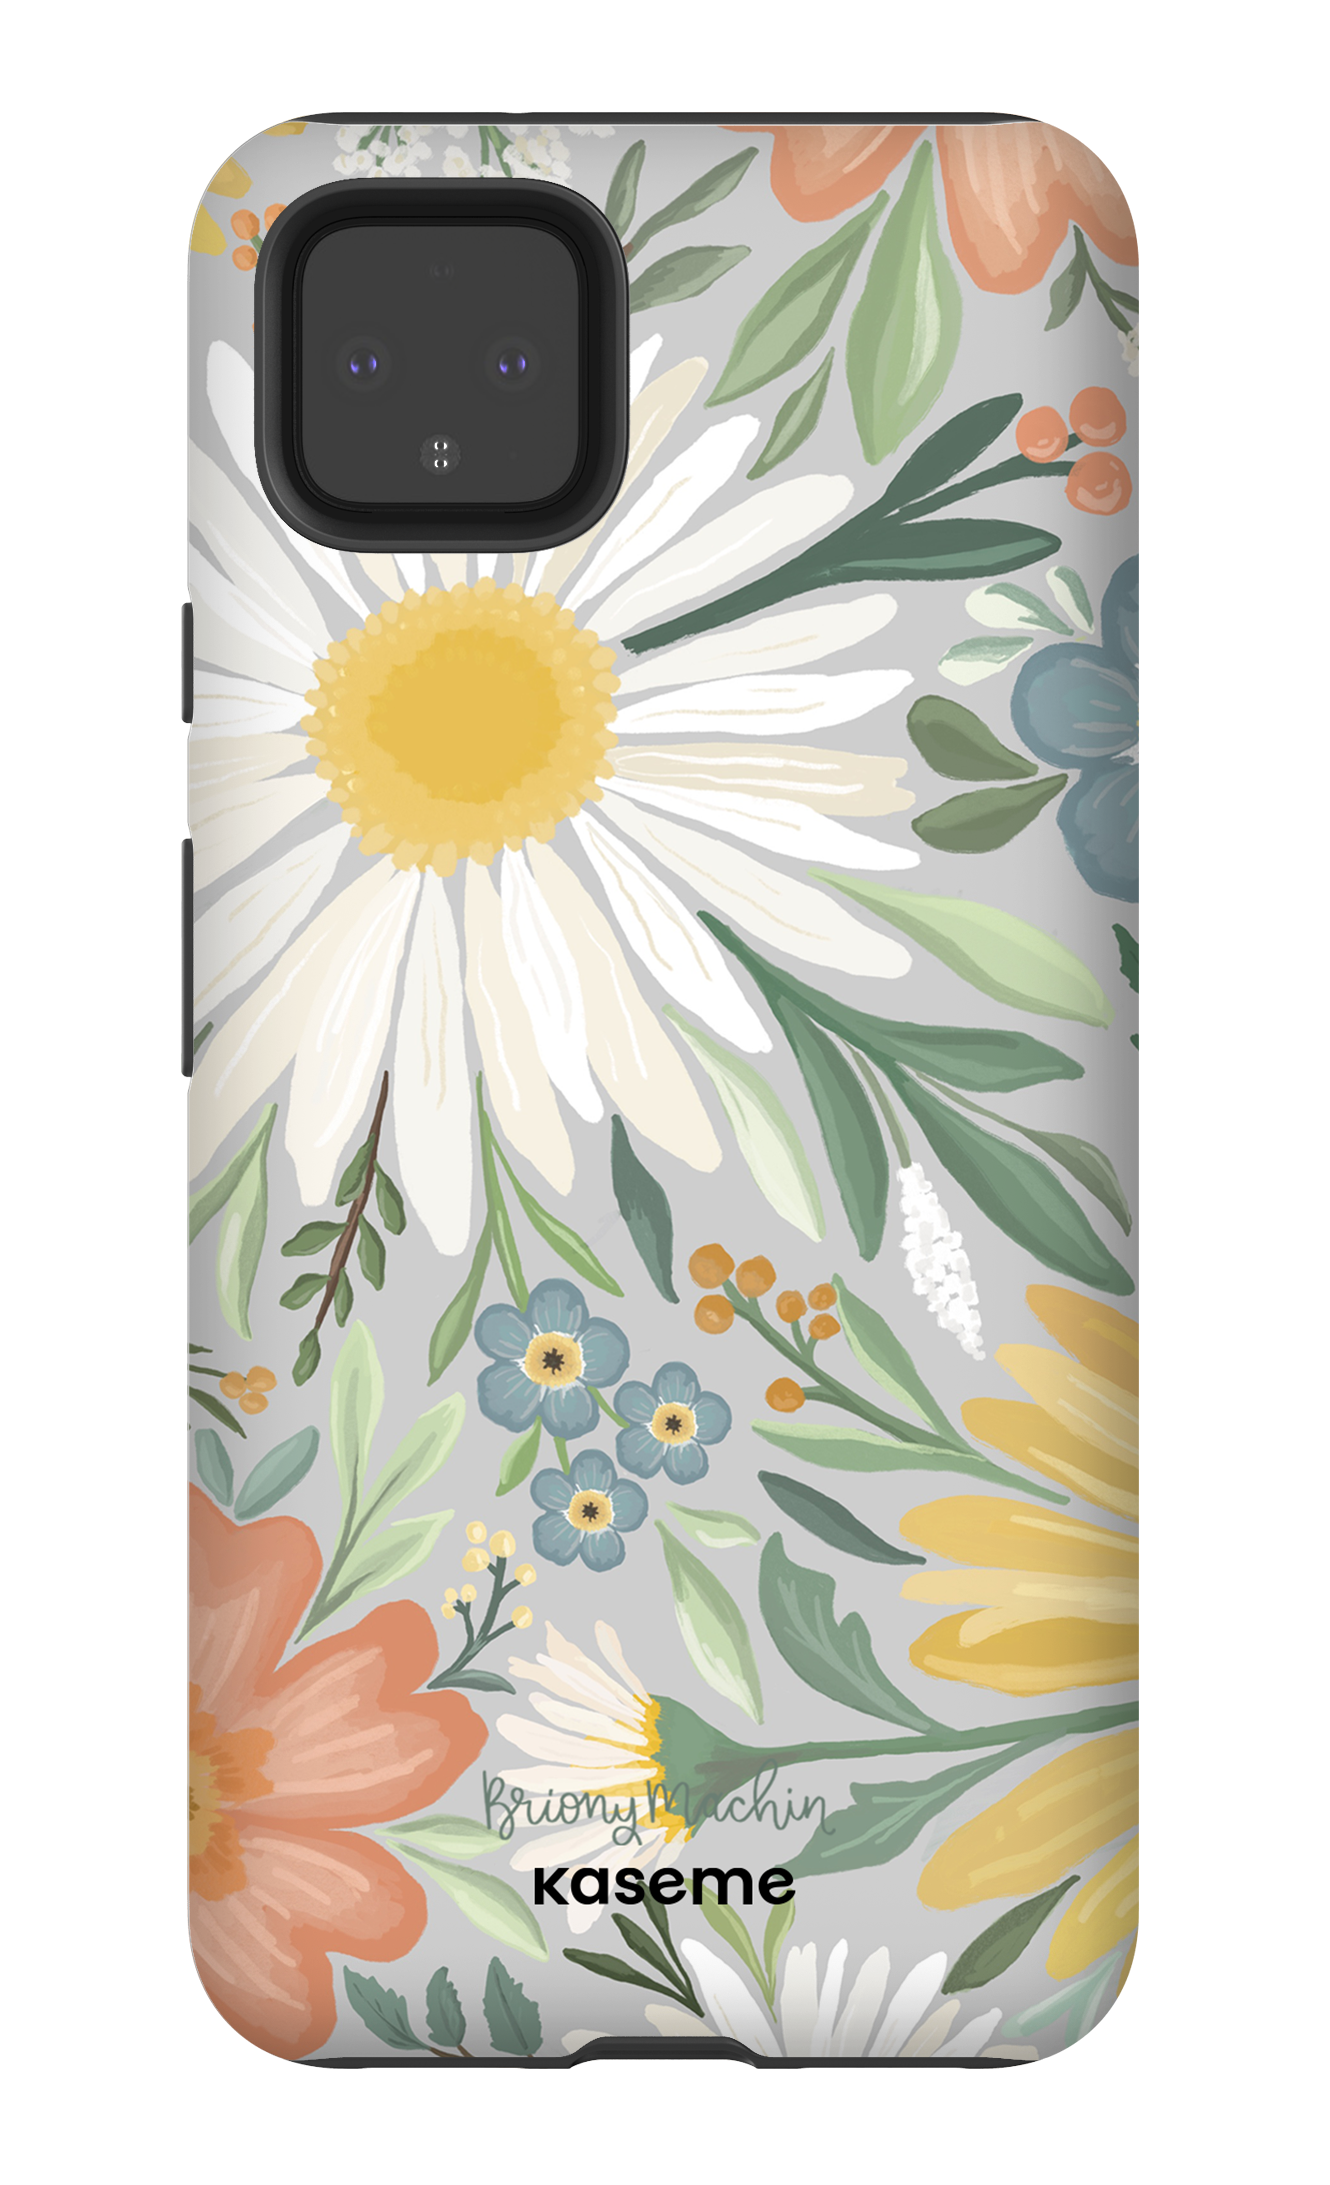 Garden Blooms by Briony Machin - Google Pixel 4 XL